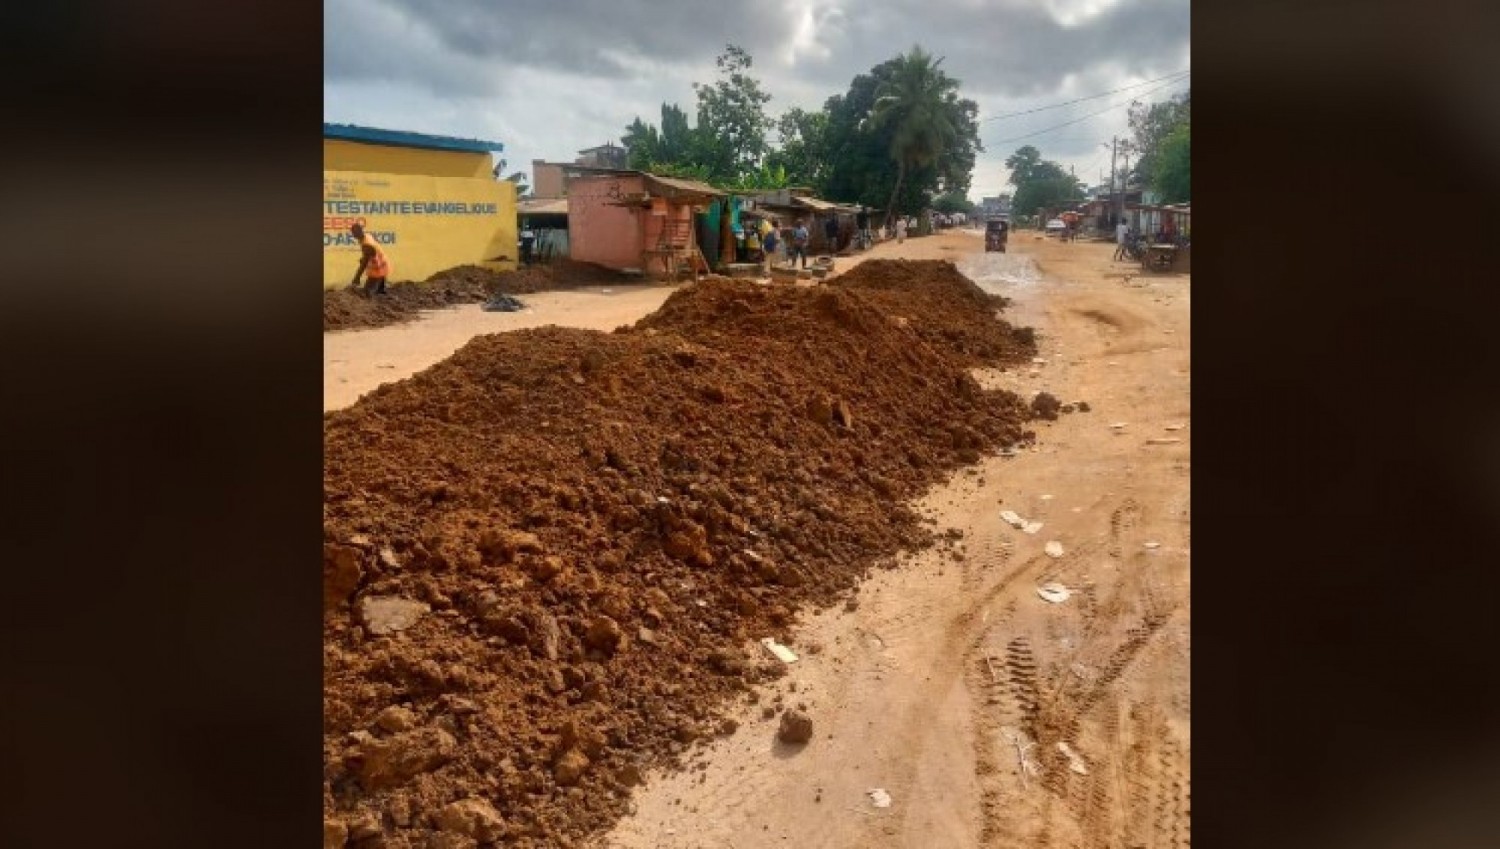 Côte d'Ivoire : Les voies dégradées à Abobo, la Maire offre une émission de distraction ce samedi aux populations, vives indignations